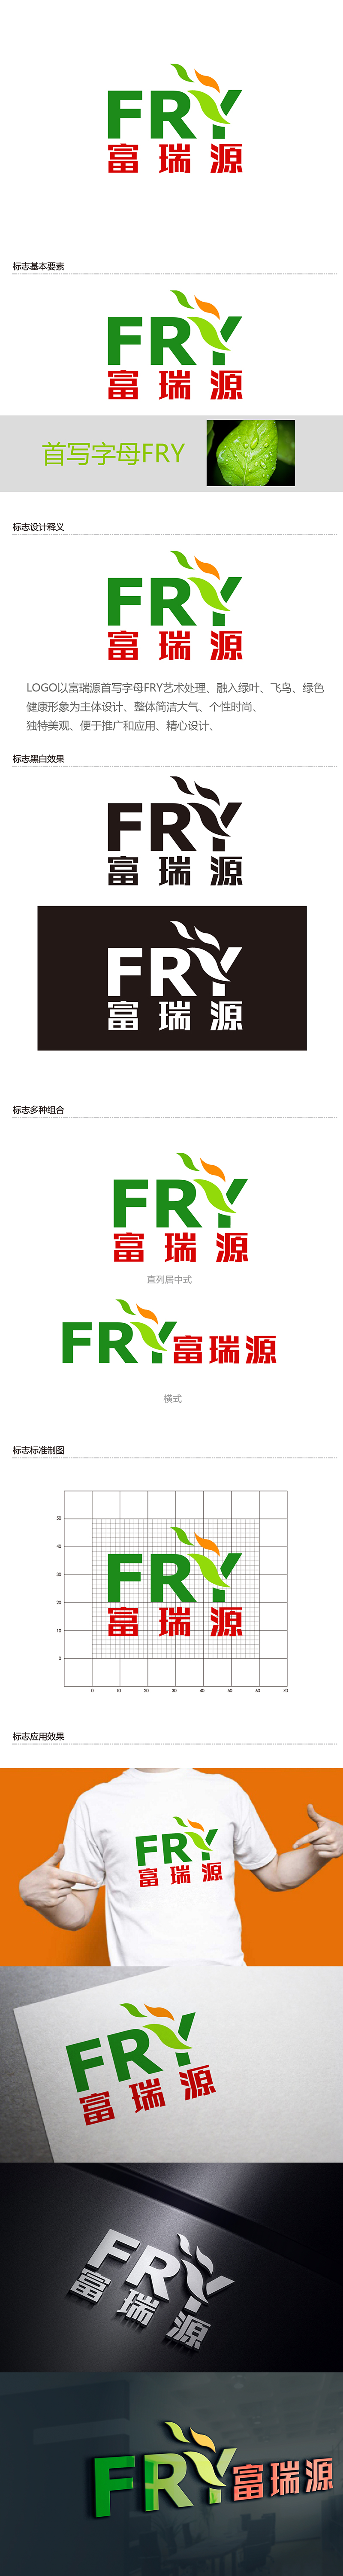 潘乐的富瑞源logo设计